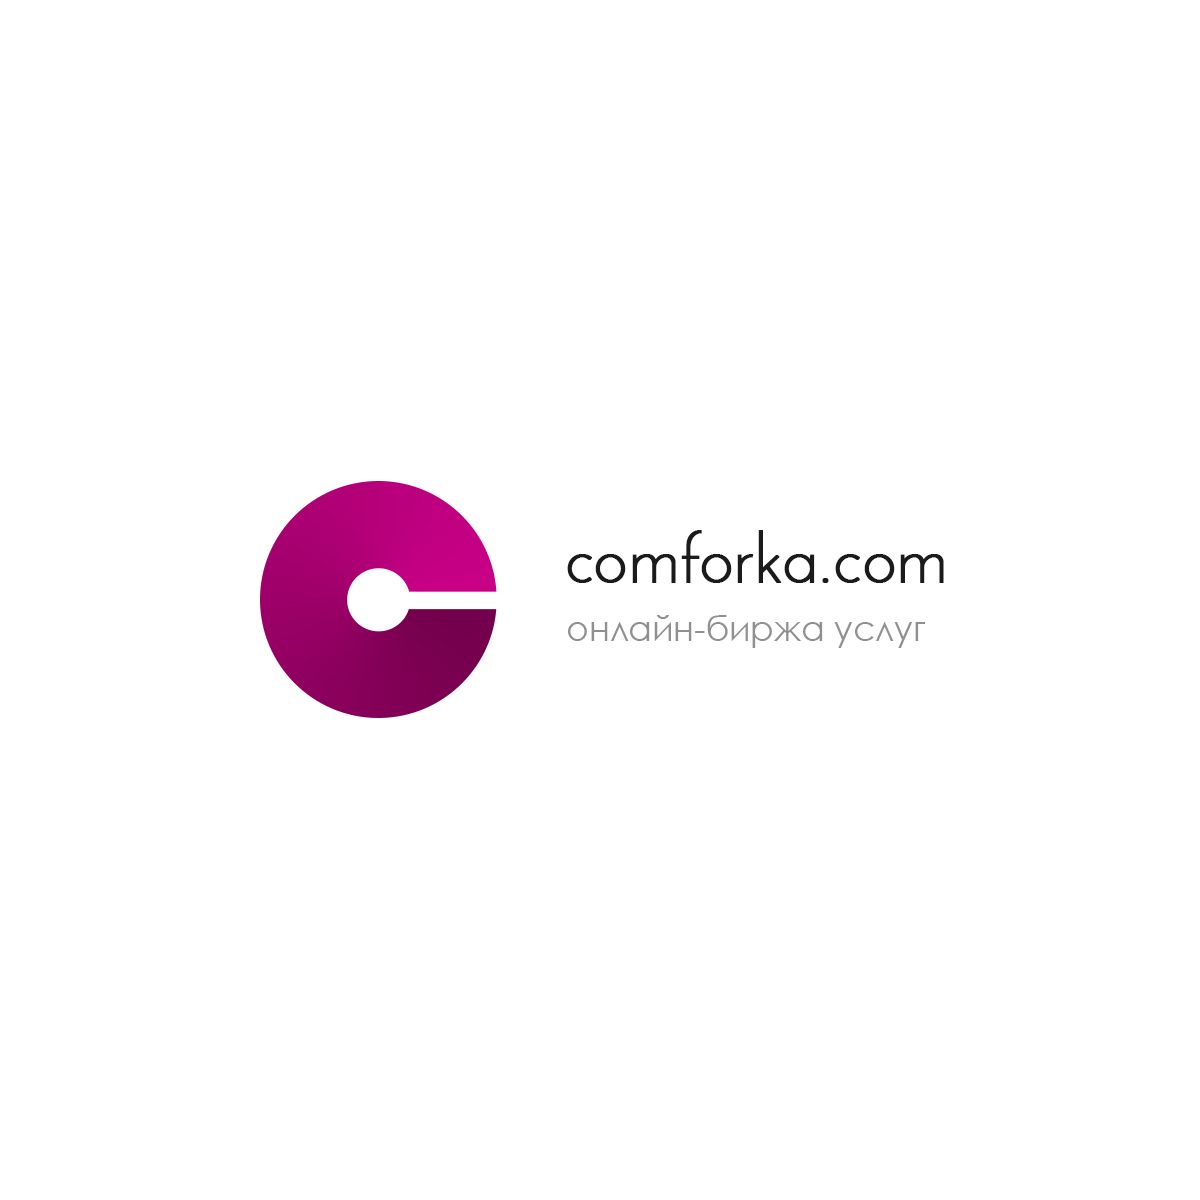 Логотип для интернет проекта com4ka.com - дизайнер chernovdv